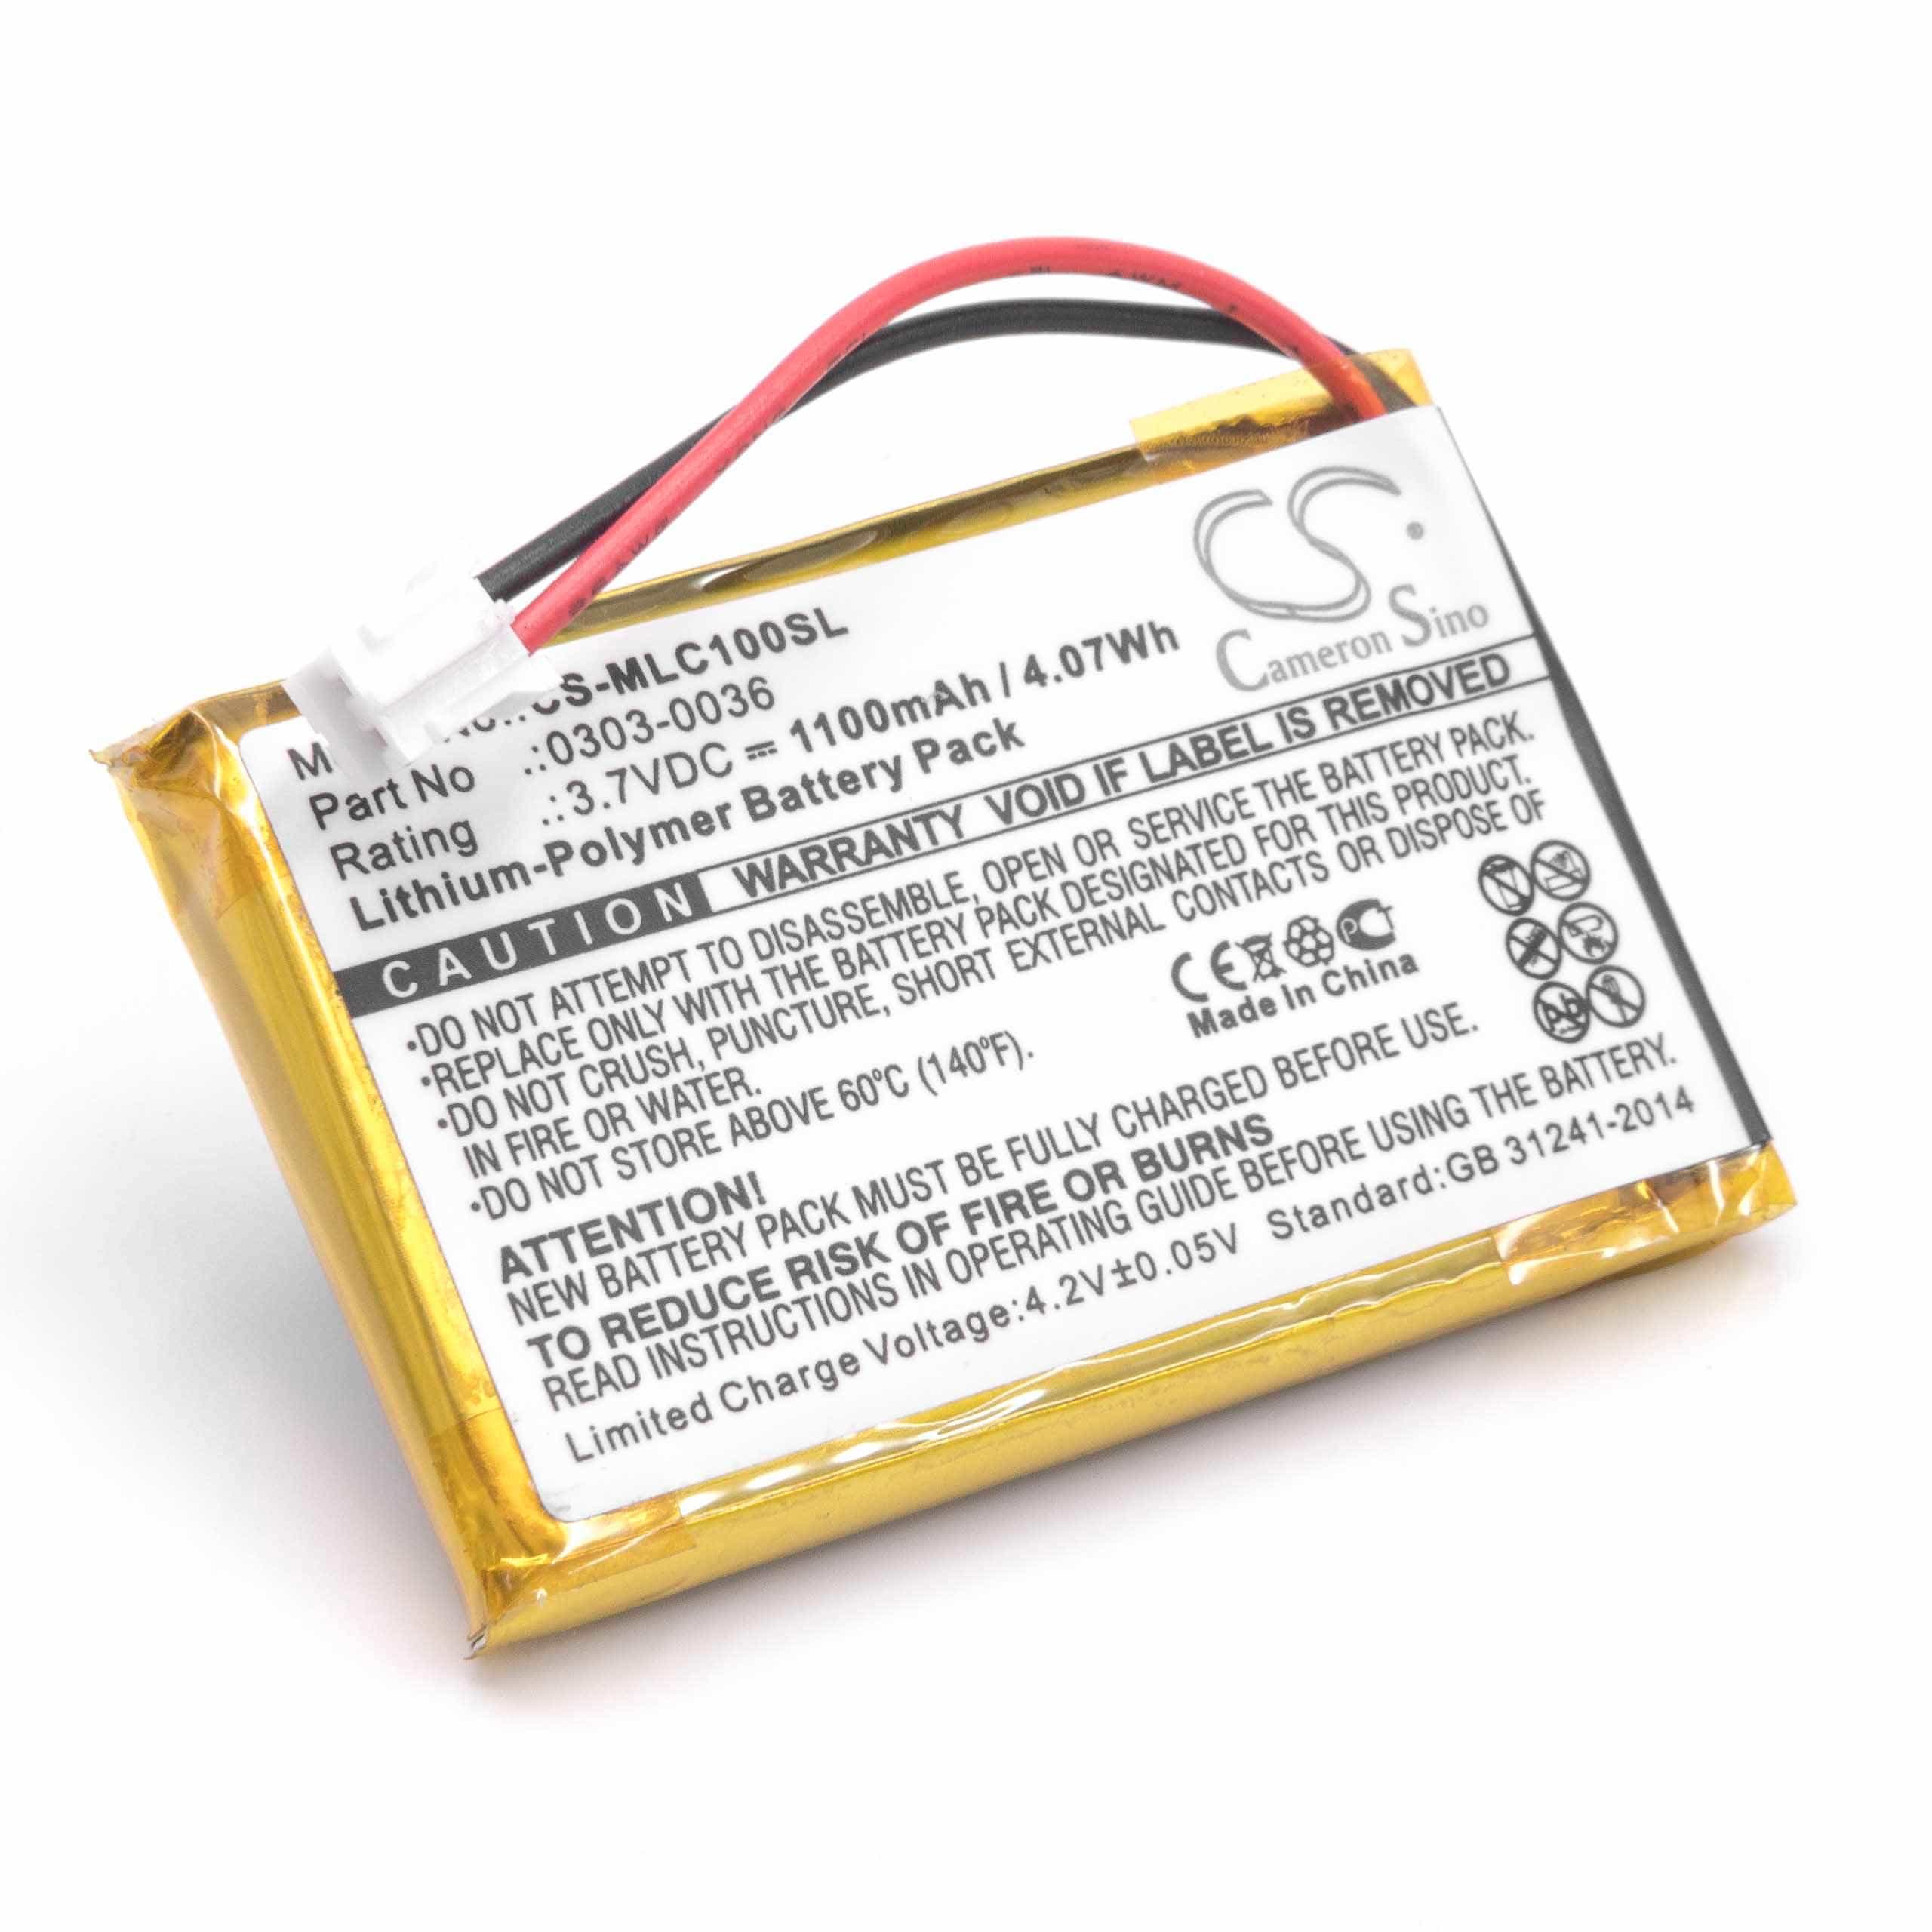 Batterie remplace Minelab 0303-0036 pour outil de mesure - 1100mAh 3,7V Li-polymère